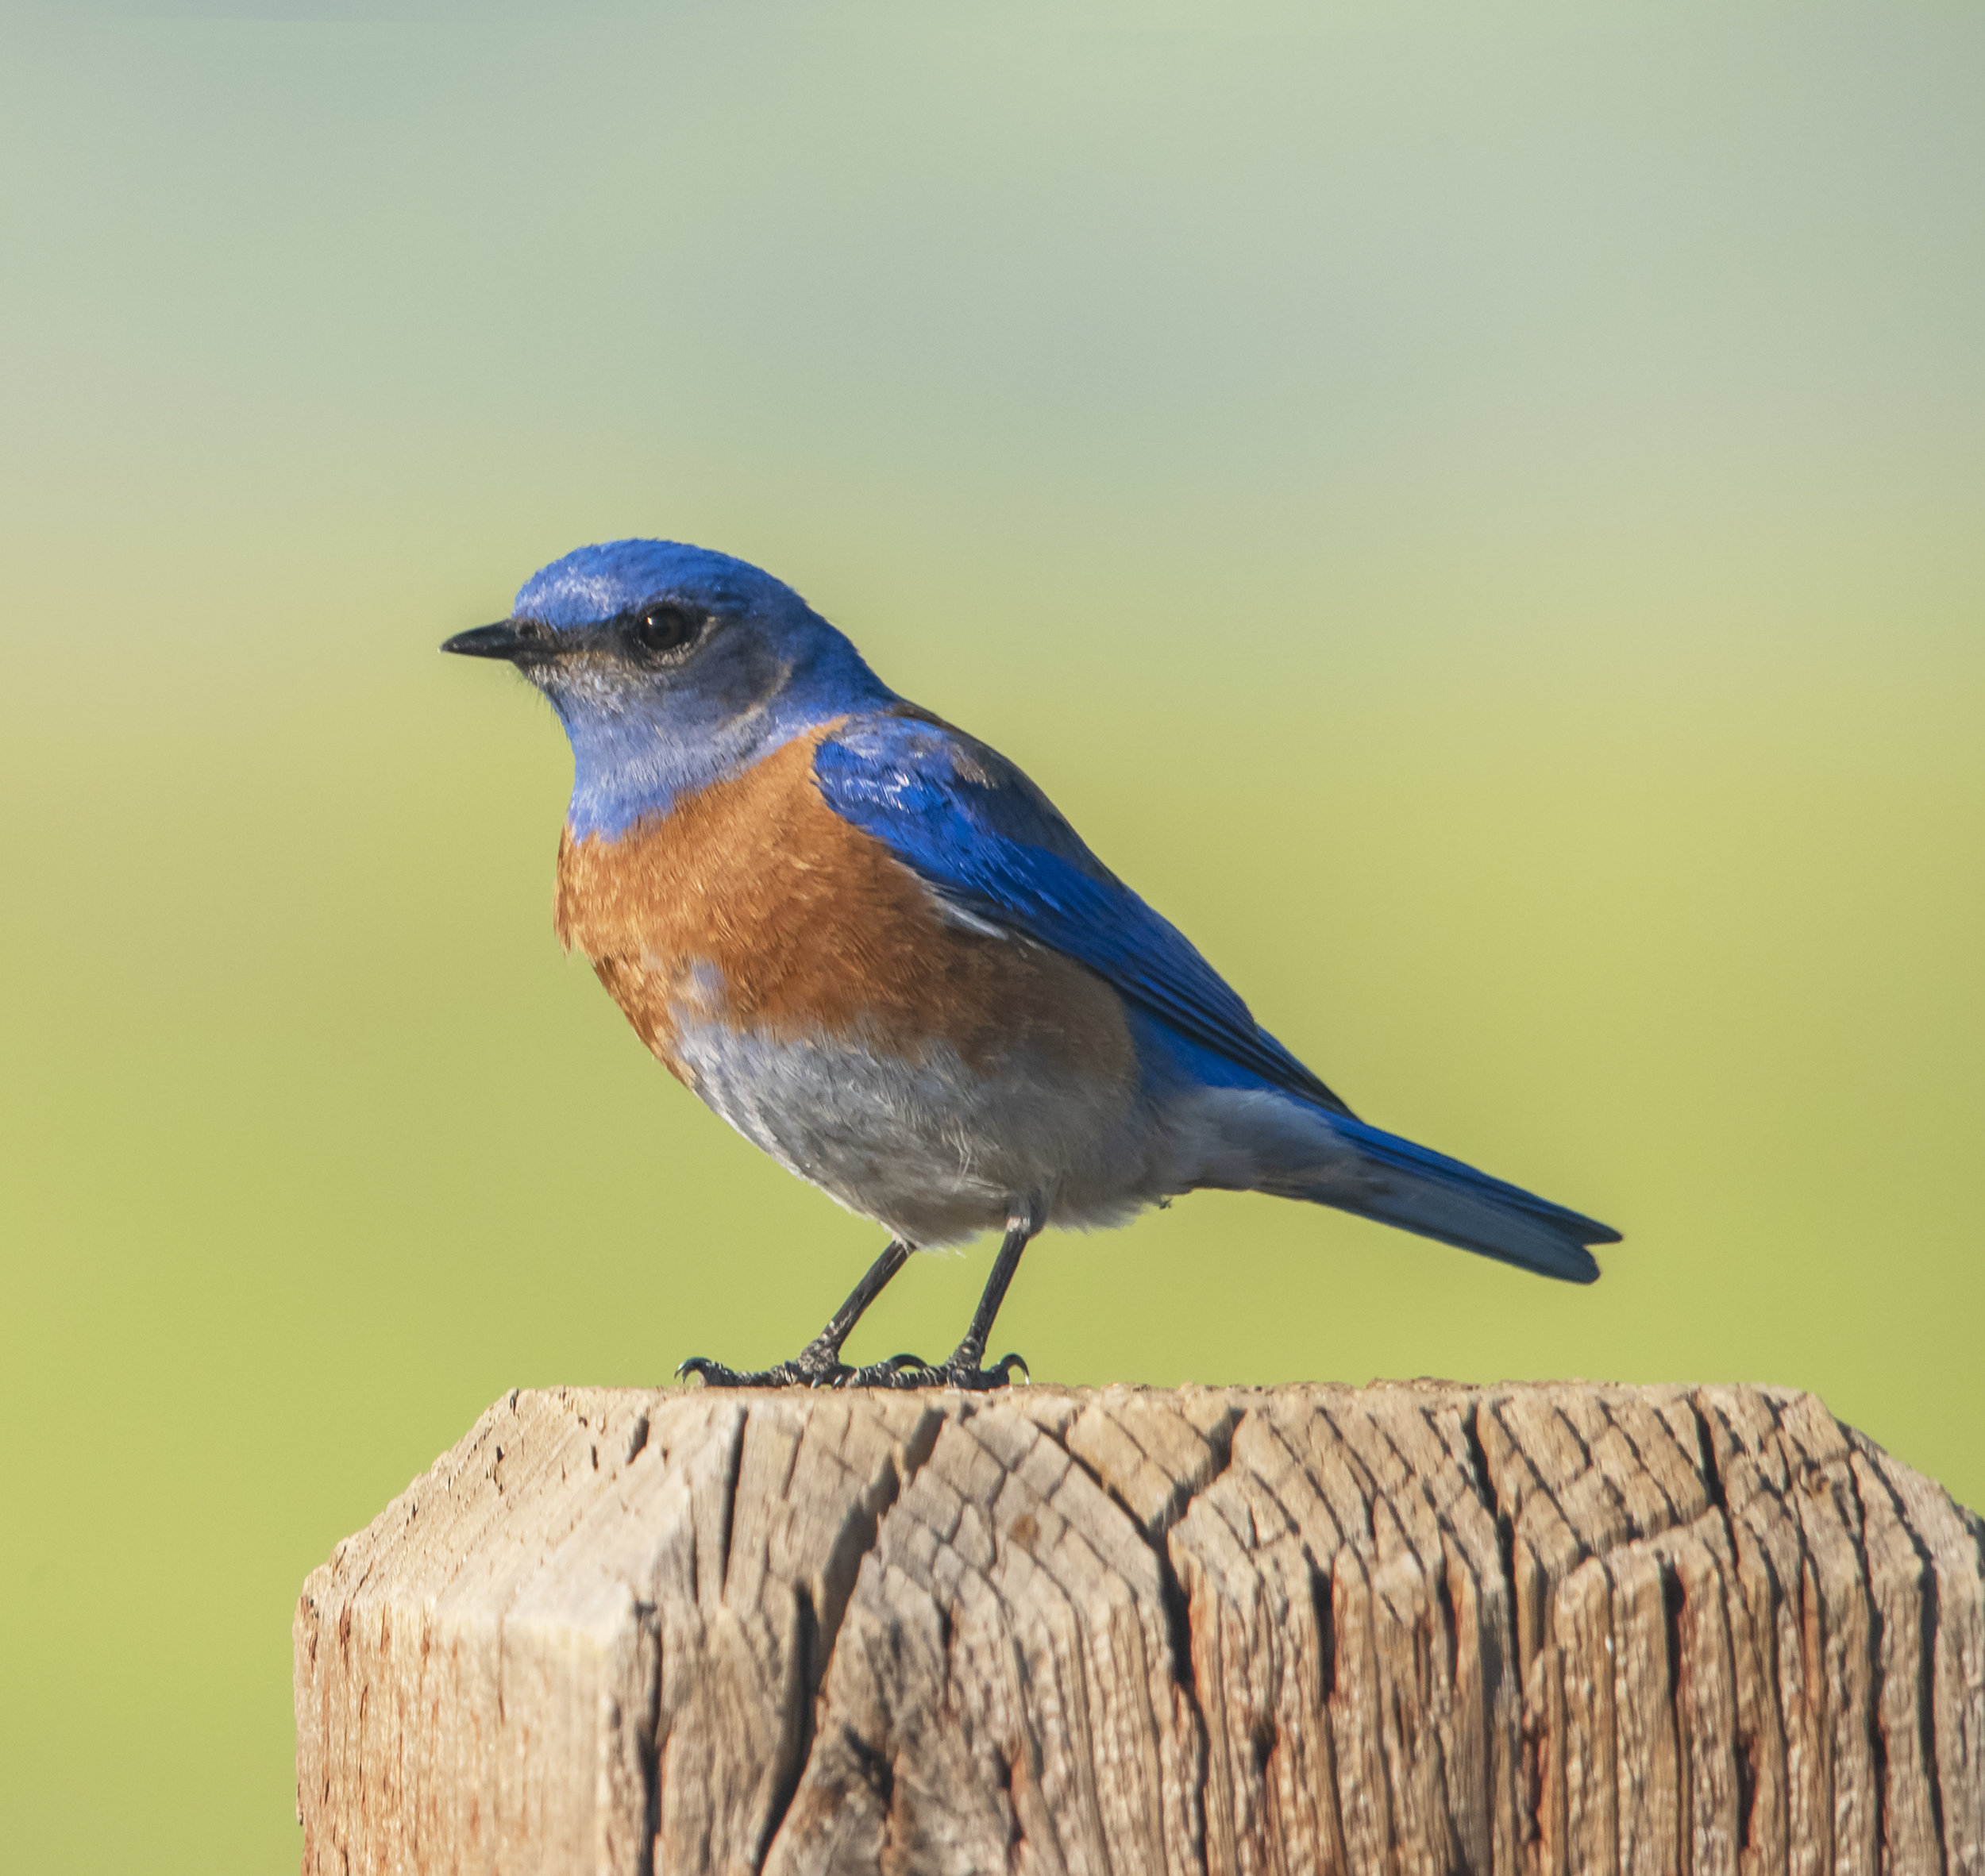 Western Bluebird at Santa Teresa County Park, San Jose, California